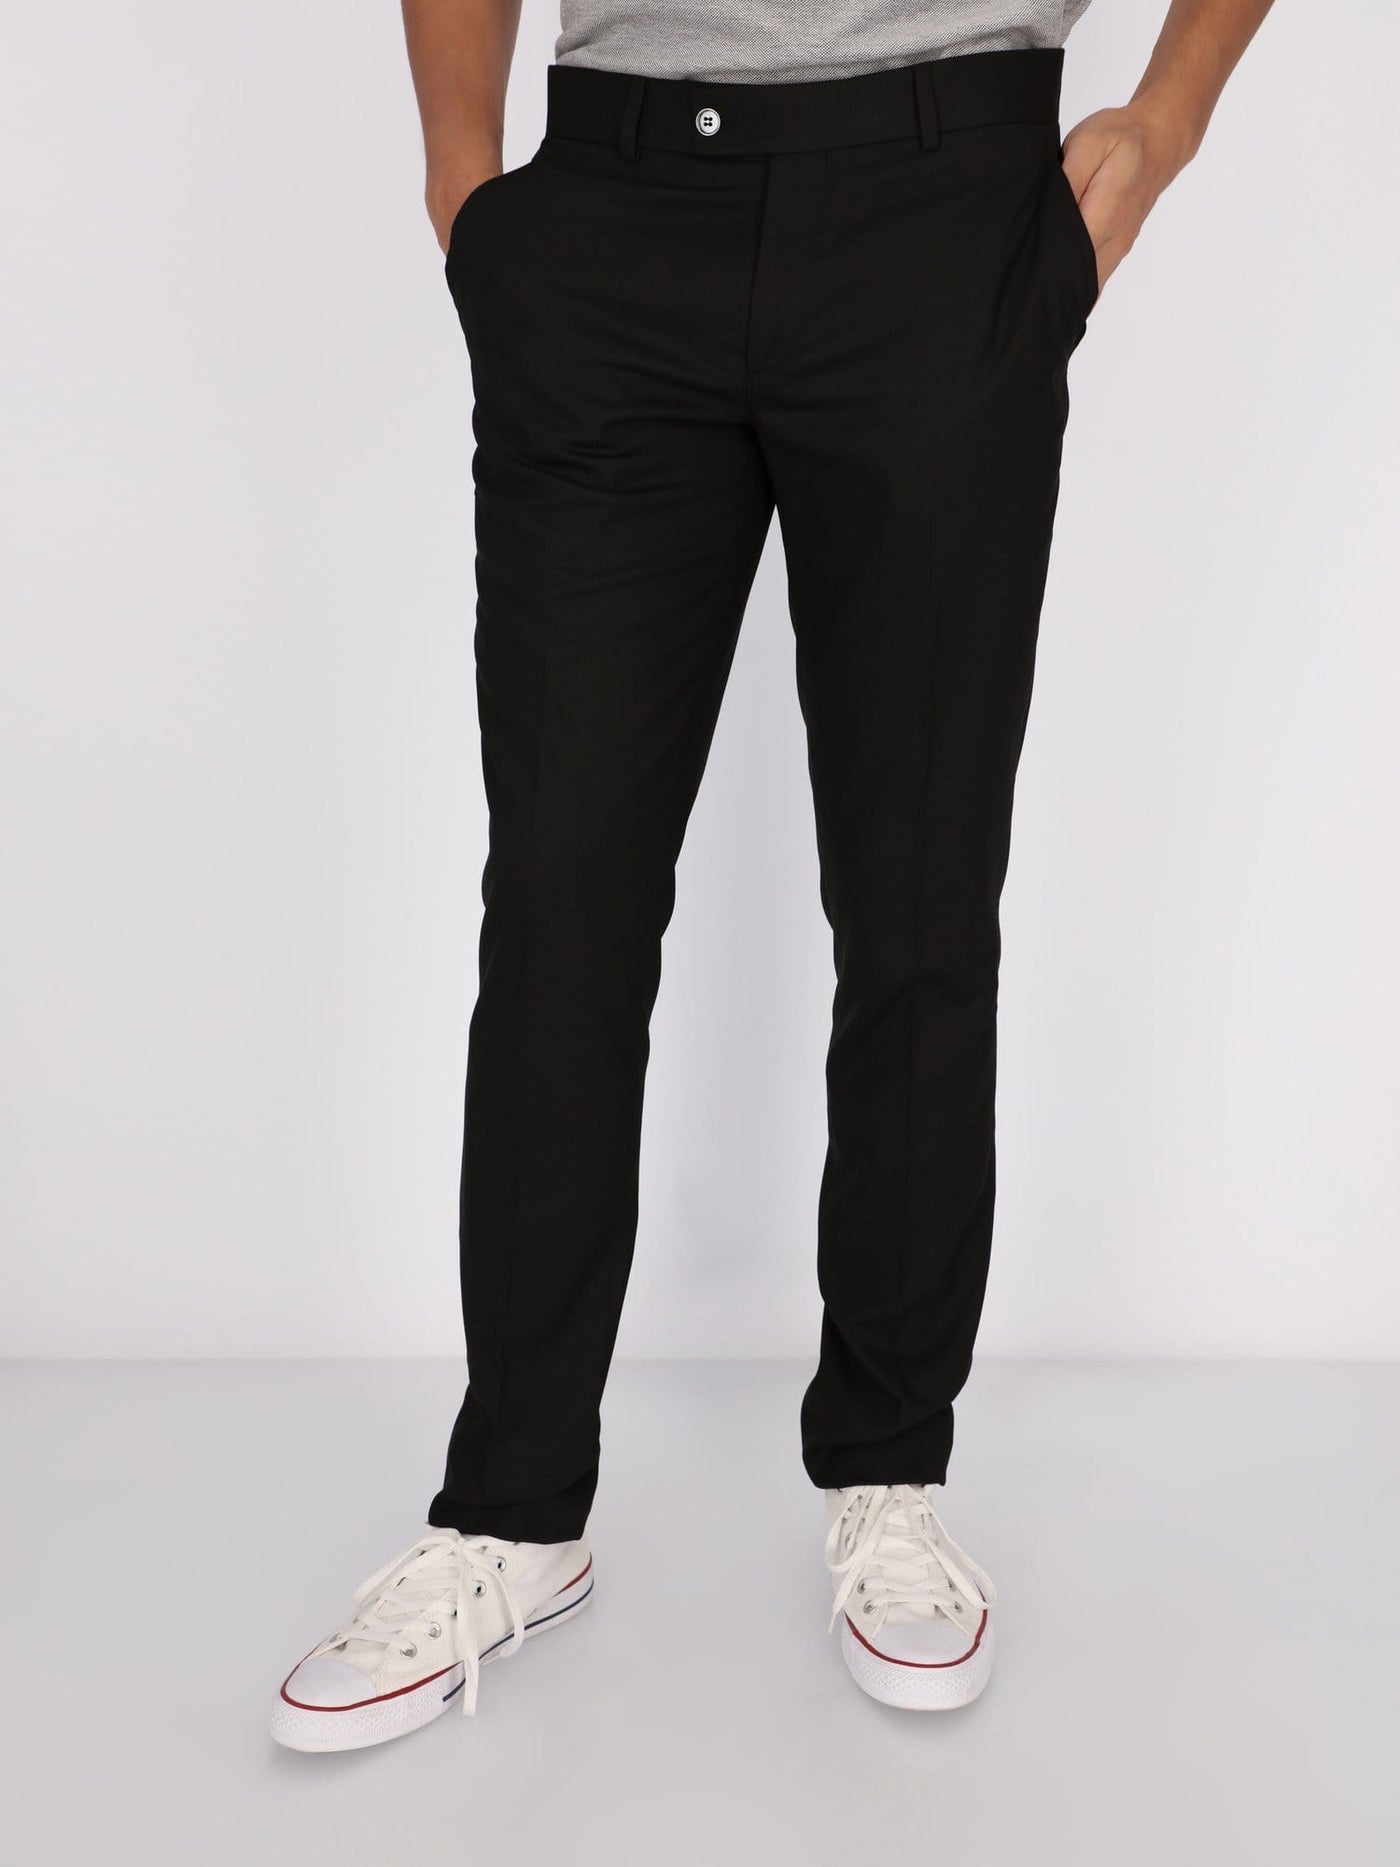 Daniel Hechter Pants & Shorts Black / 46 Gtex Suit Pants